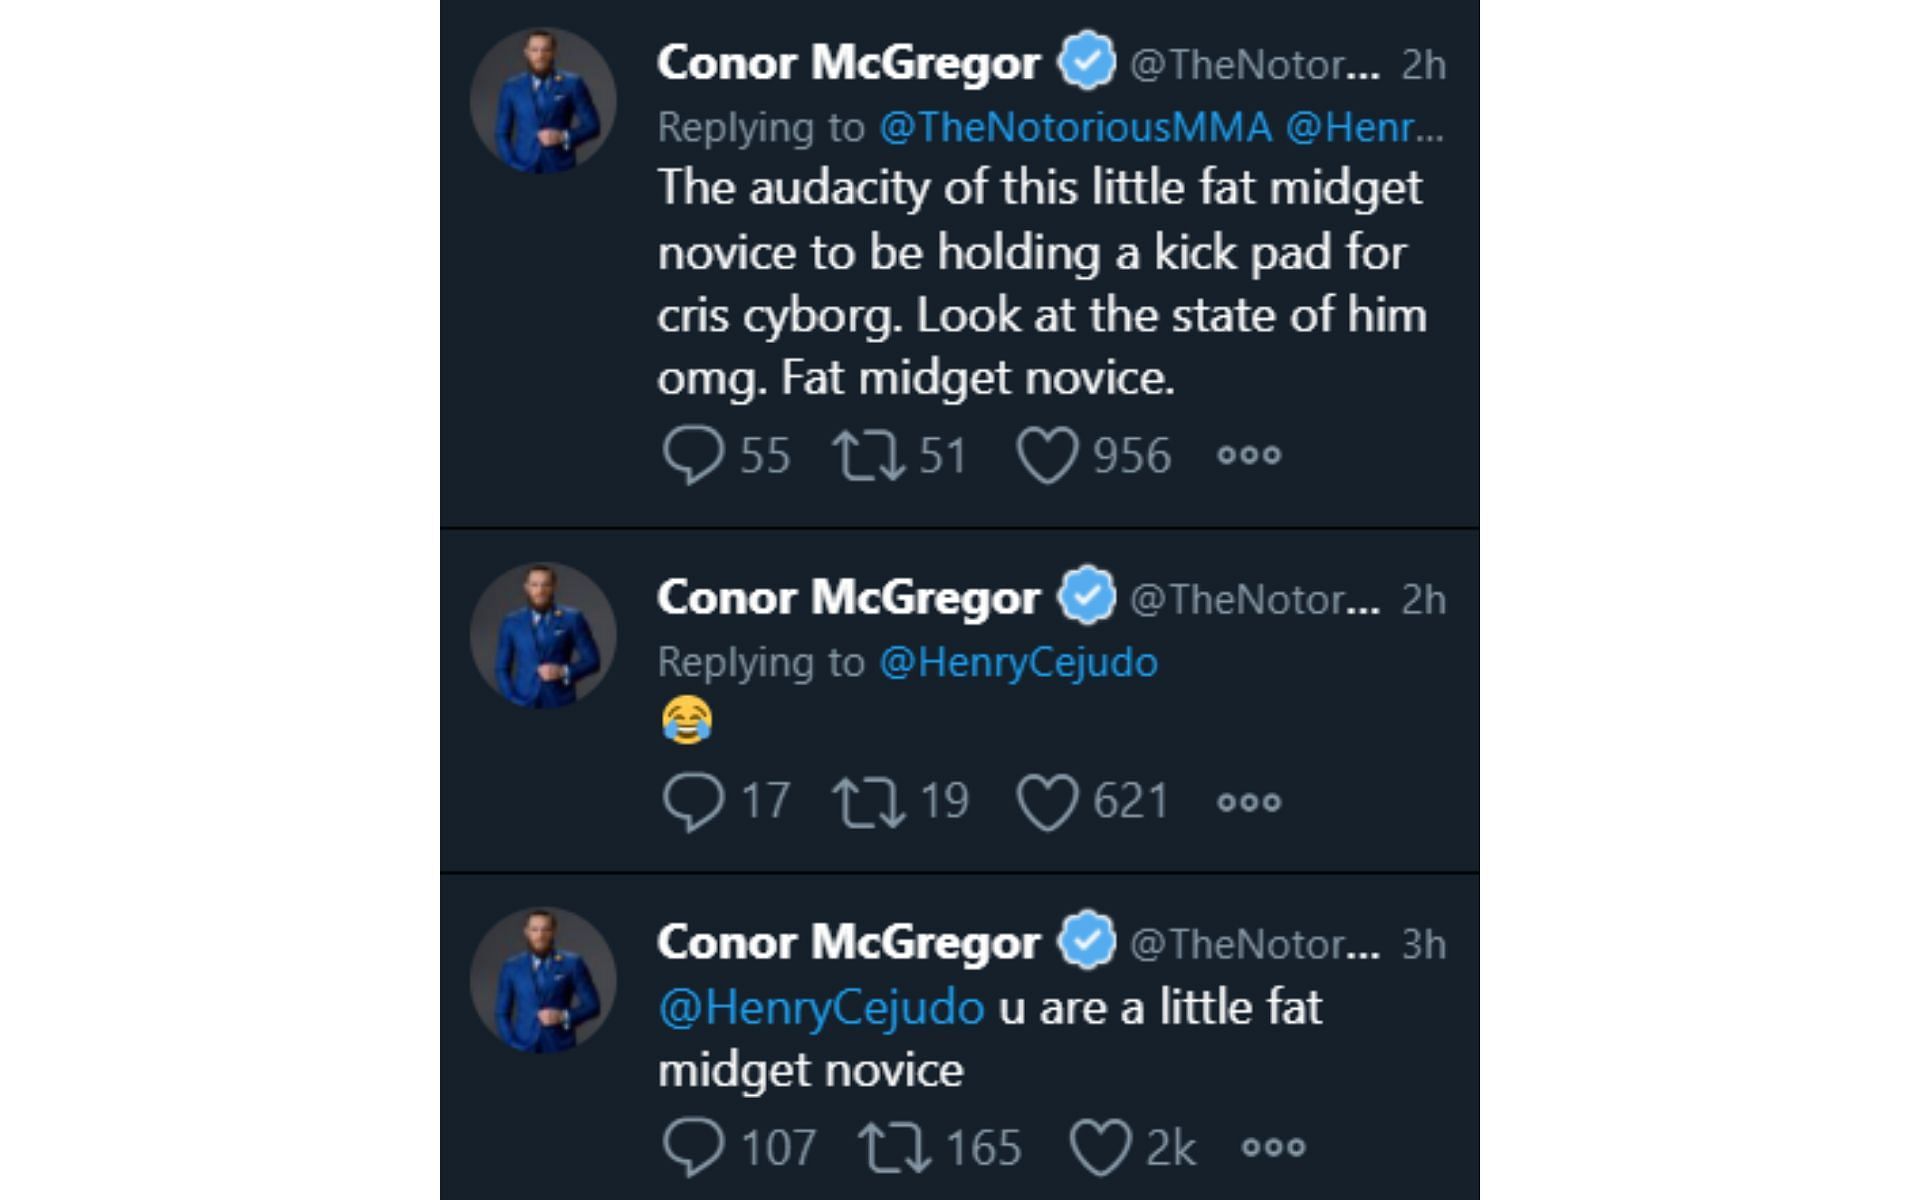 Conor McGregor responding to Henry Cejudo's video